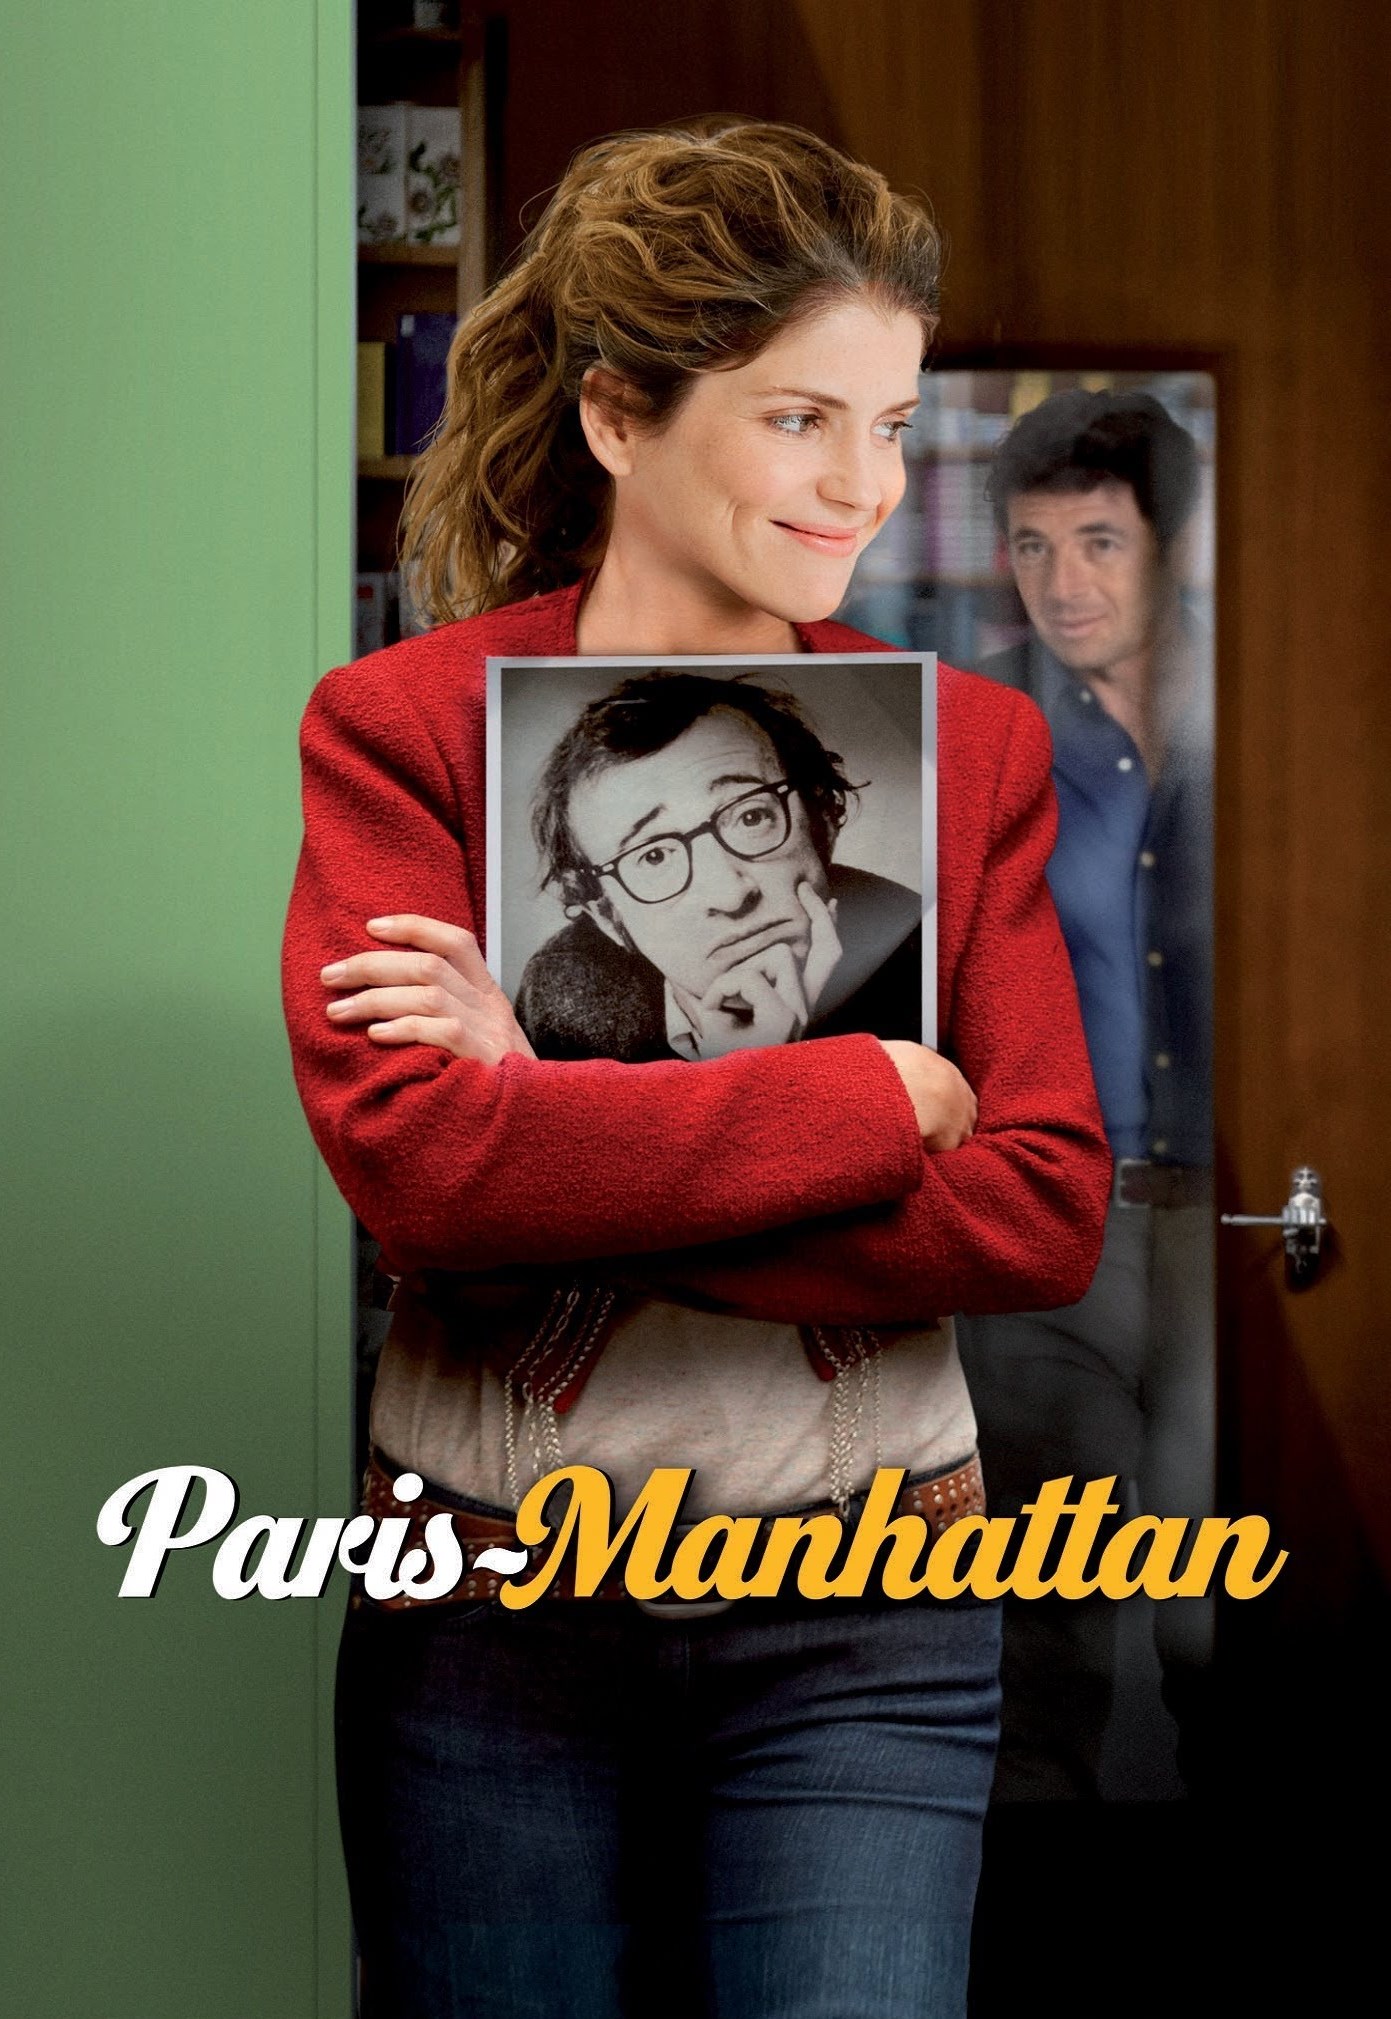 Paris-Manhattan [HD] (2012)